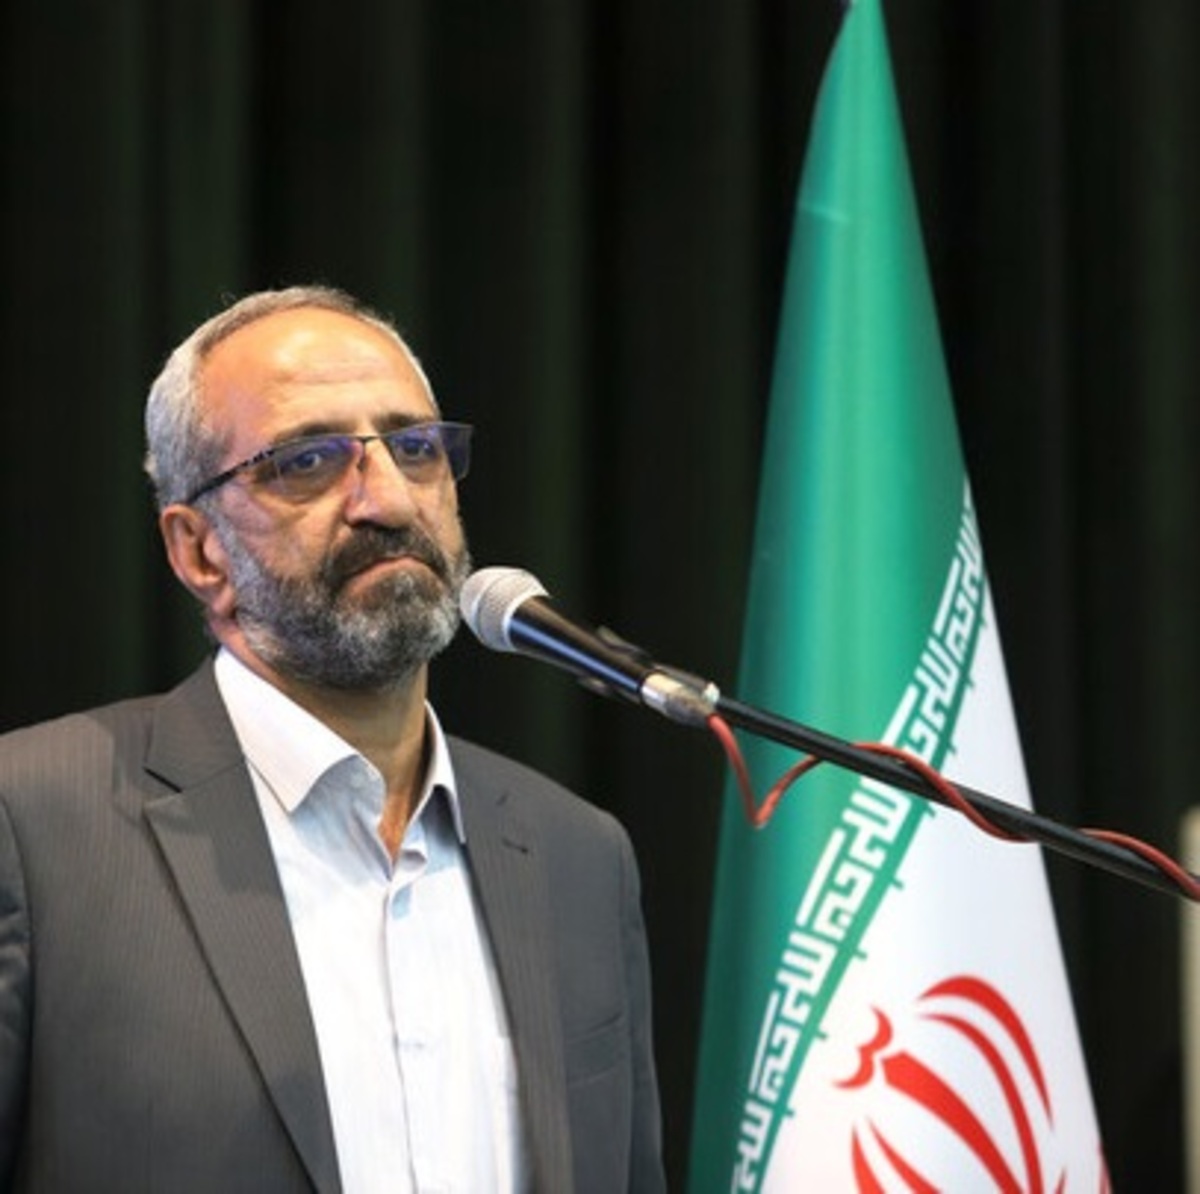 فرماندار اصفهان: هیچ درخواست اخذ مجوزی برای برگزاری تجمع در روز جمعه نشده